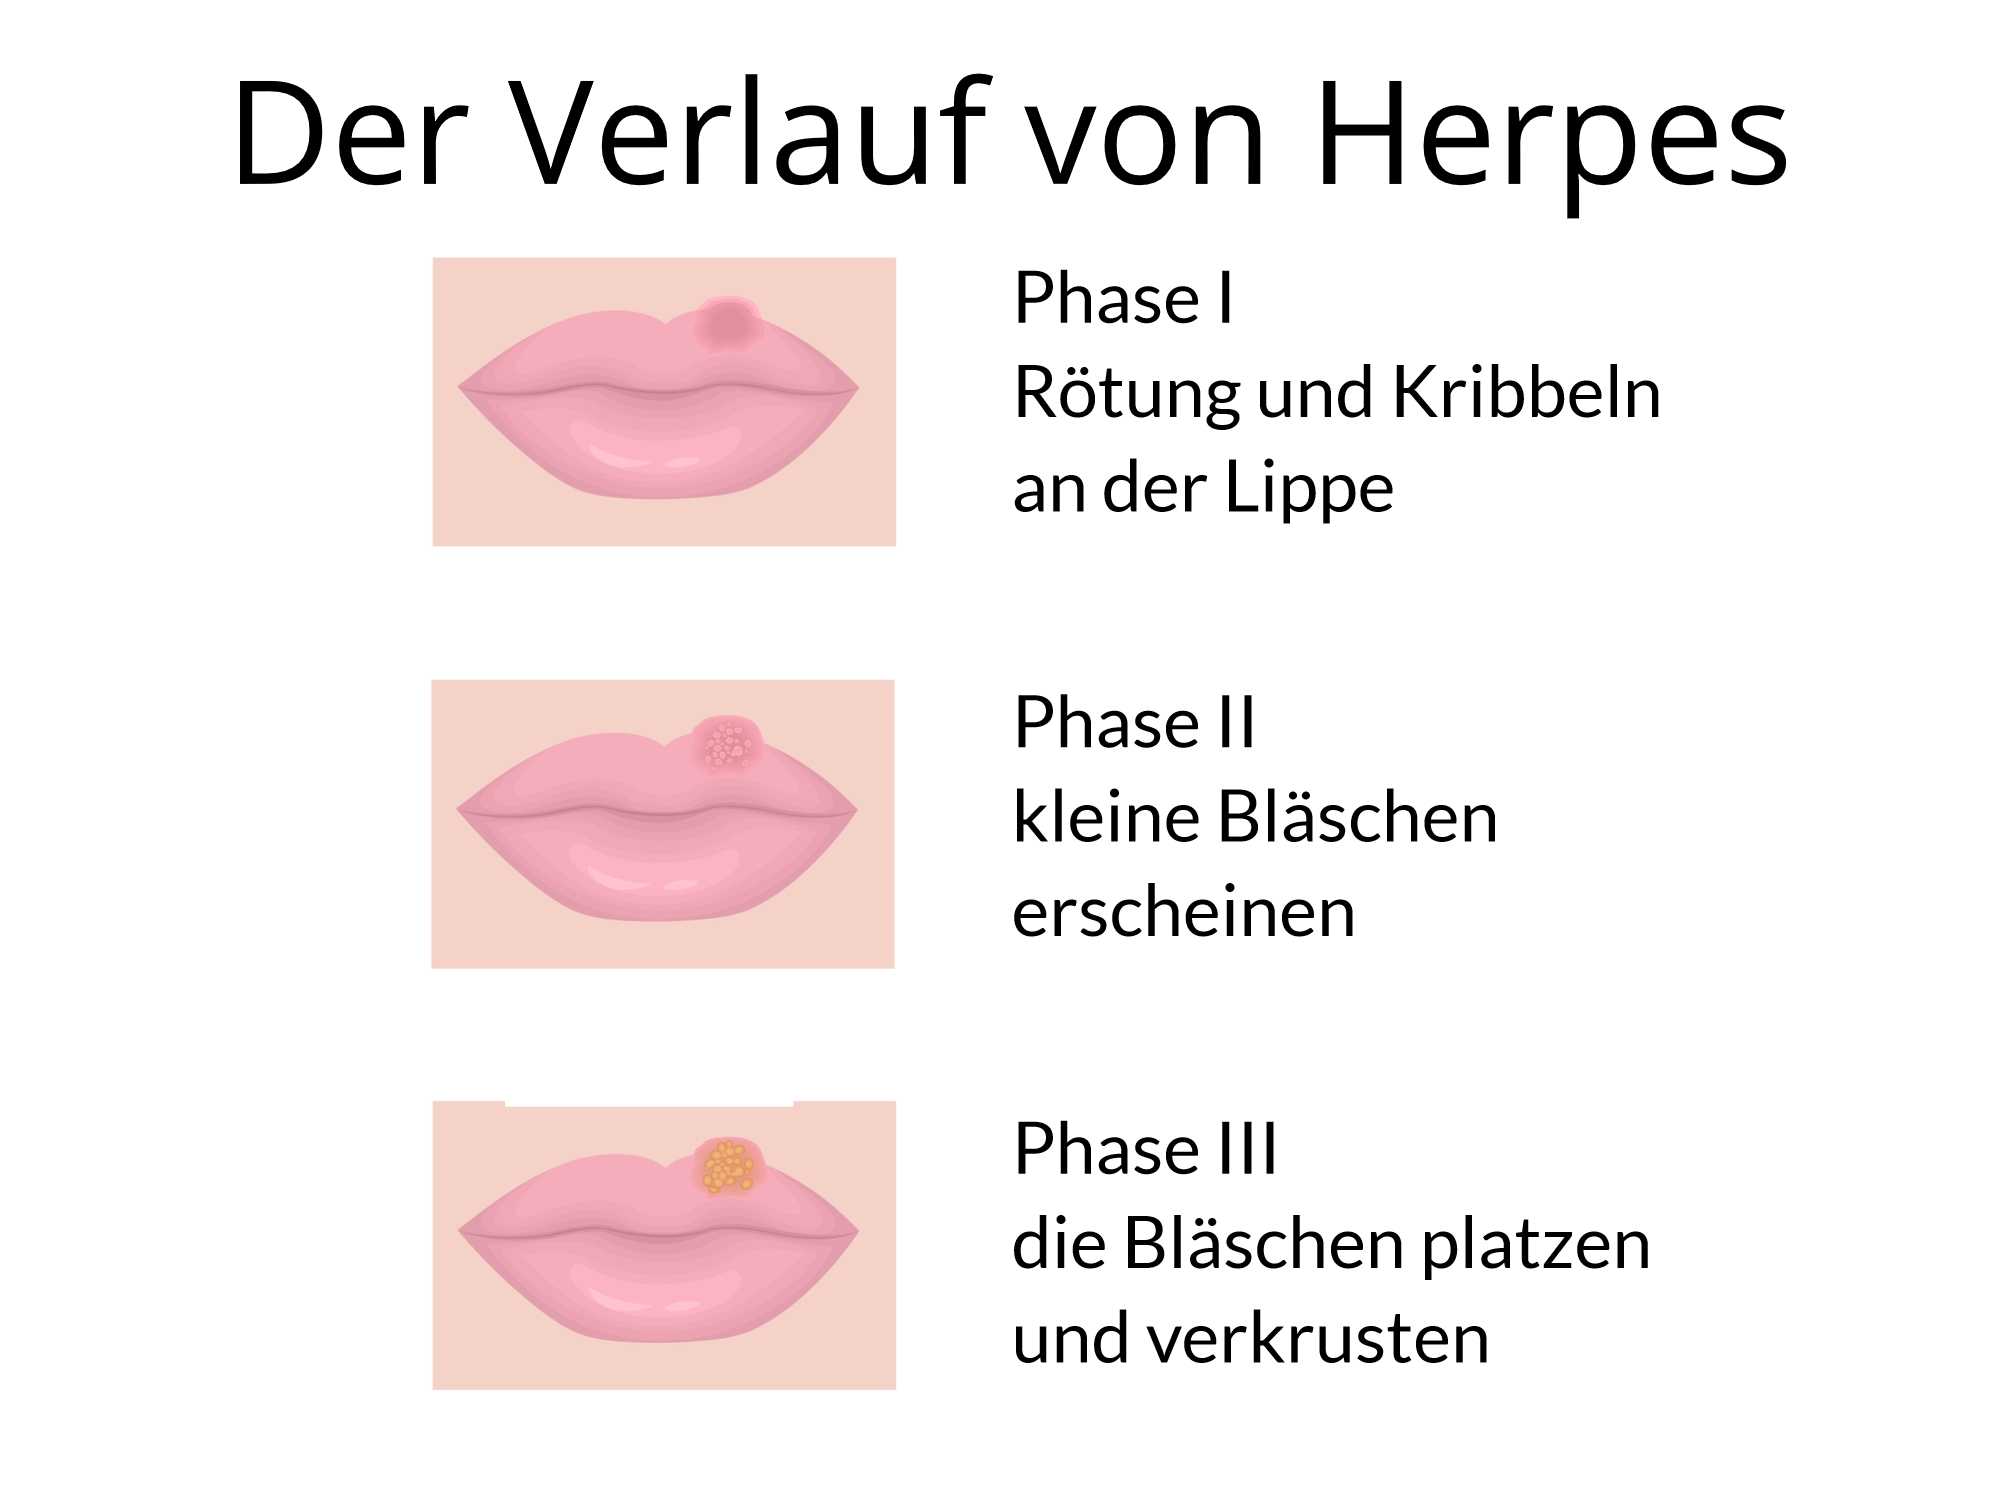 Mund herpes heilt nicht am Herpes: Lippenherpes,